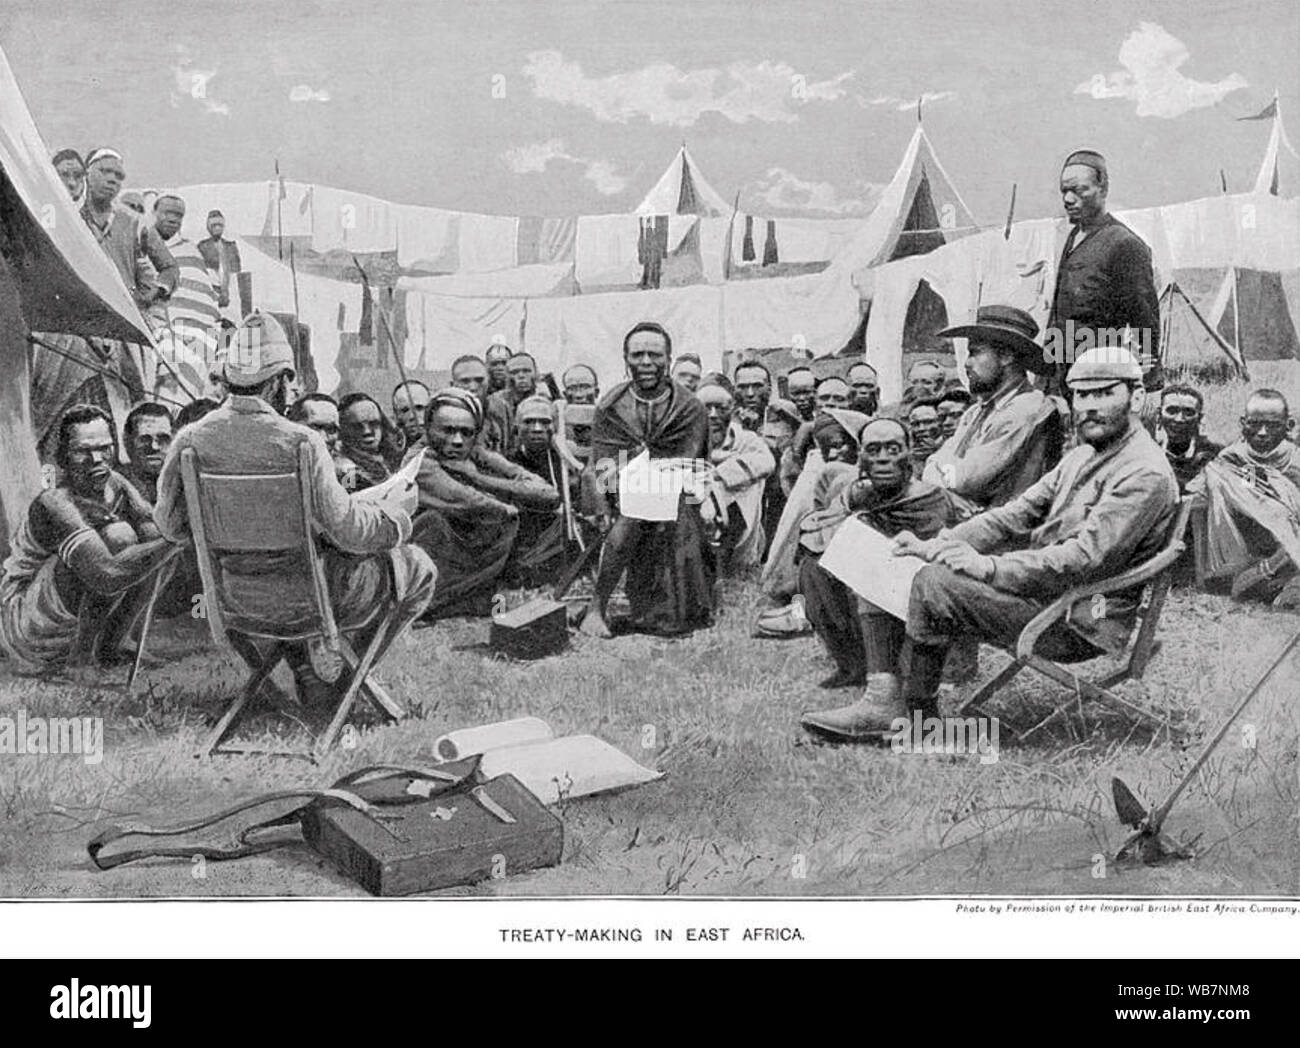 IMPERIAL BRITISH EAST AFRICA COMPANY mit dem Titel "Vertrag in Ostafrika" durch das Unternehmen mit stammesangehörigen der Besuch einer Britischen Camp ausgestellt Stockfoto